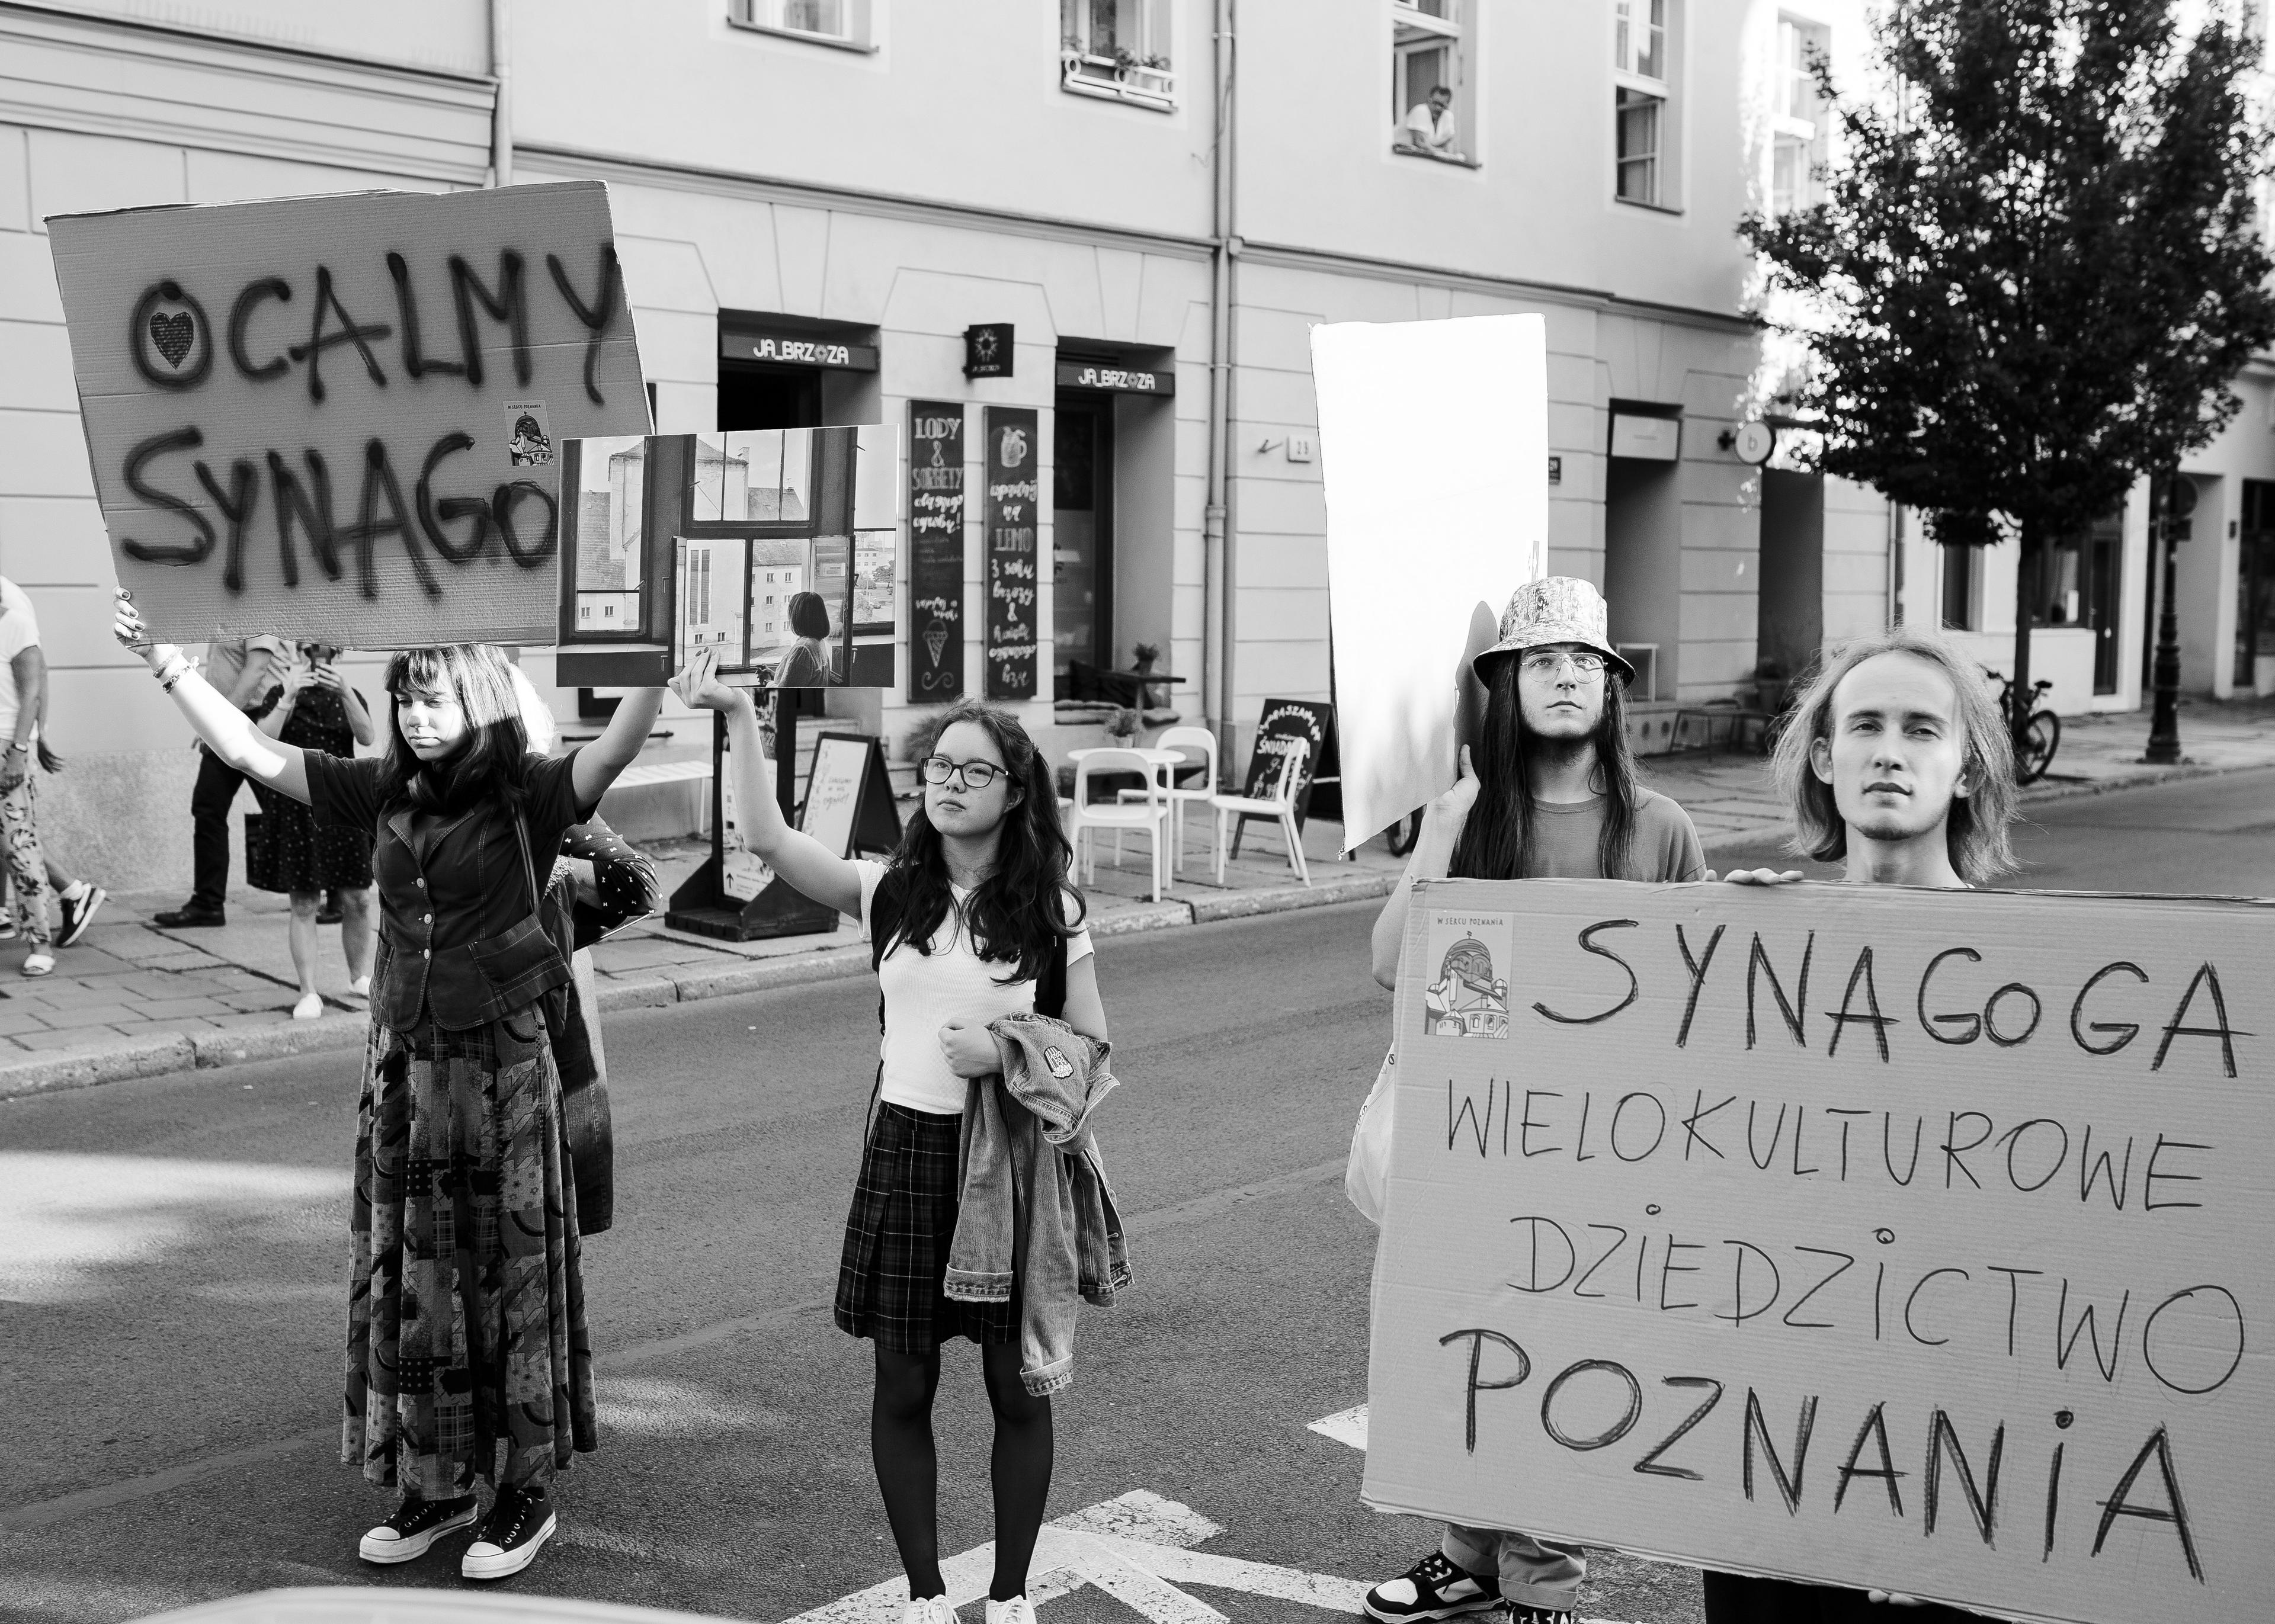 manifestacja uliczna, młodzi ludzie idą z hasłami" Synagoga wielokulturowe dziedzictwo Poznania"